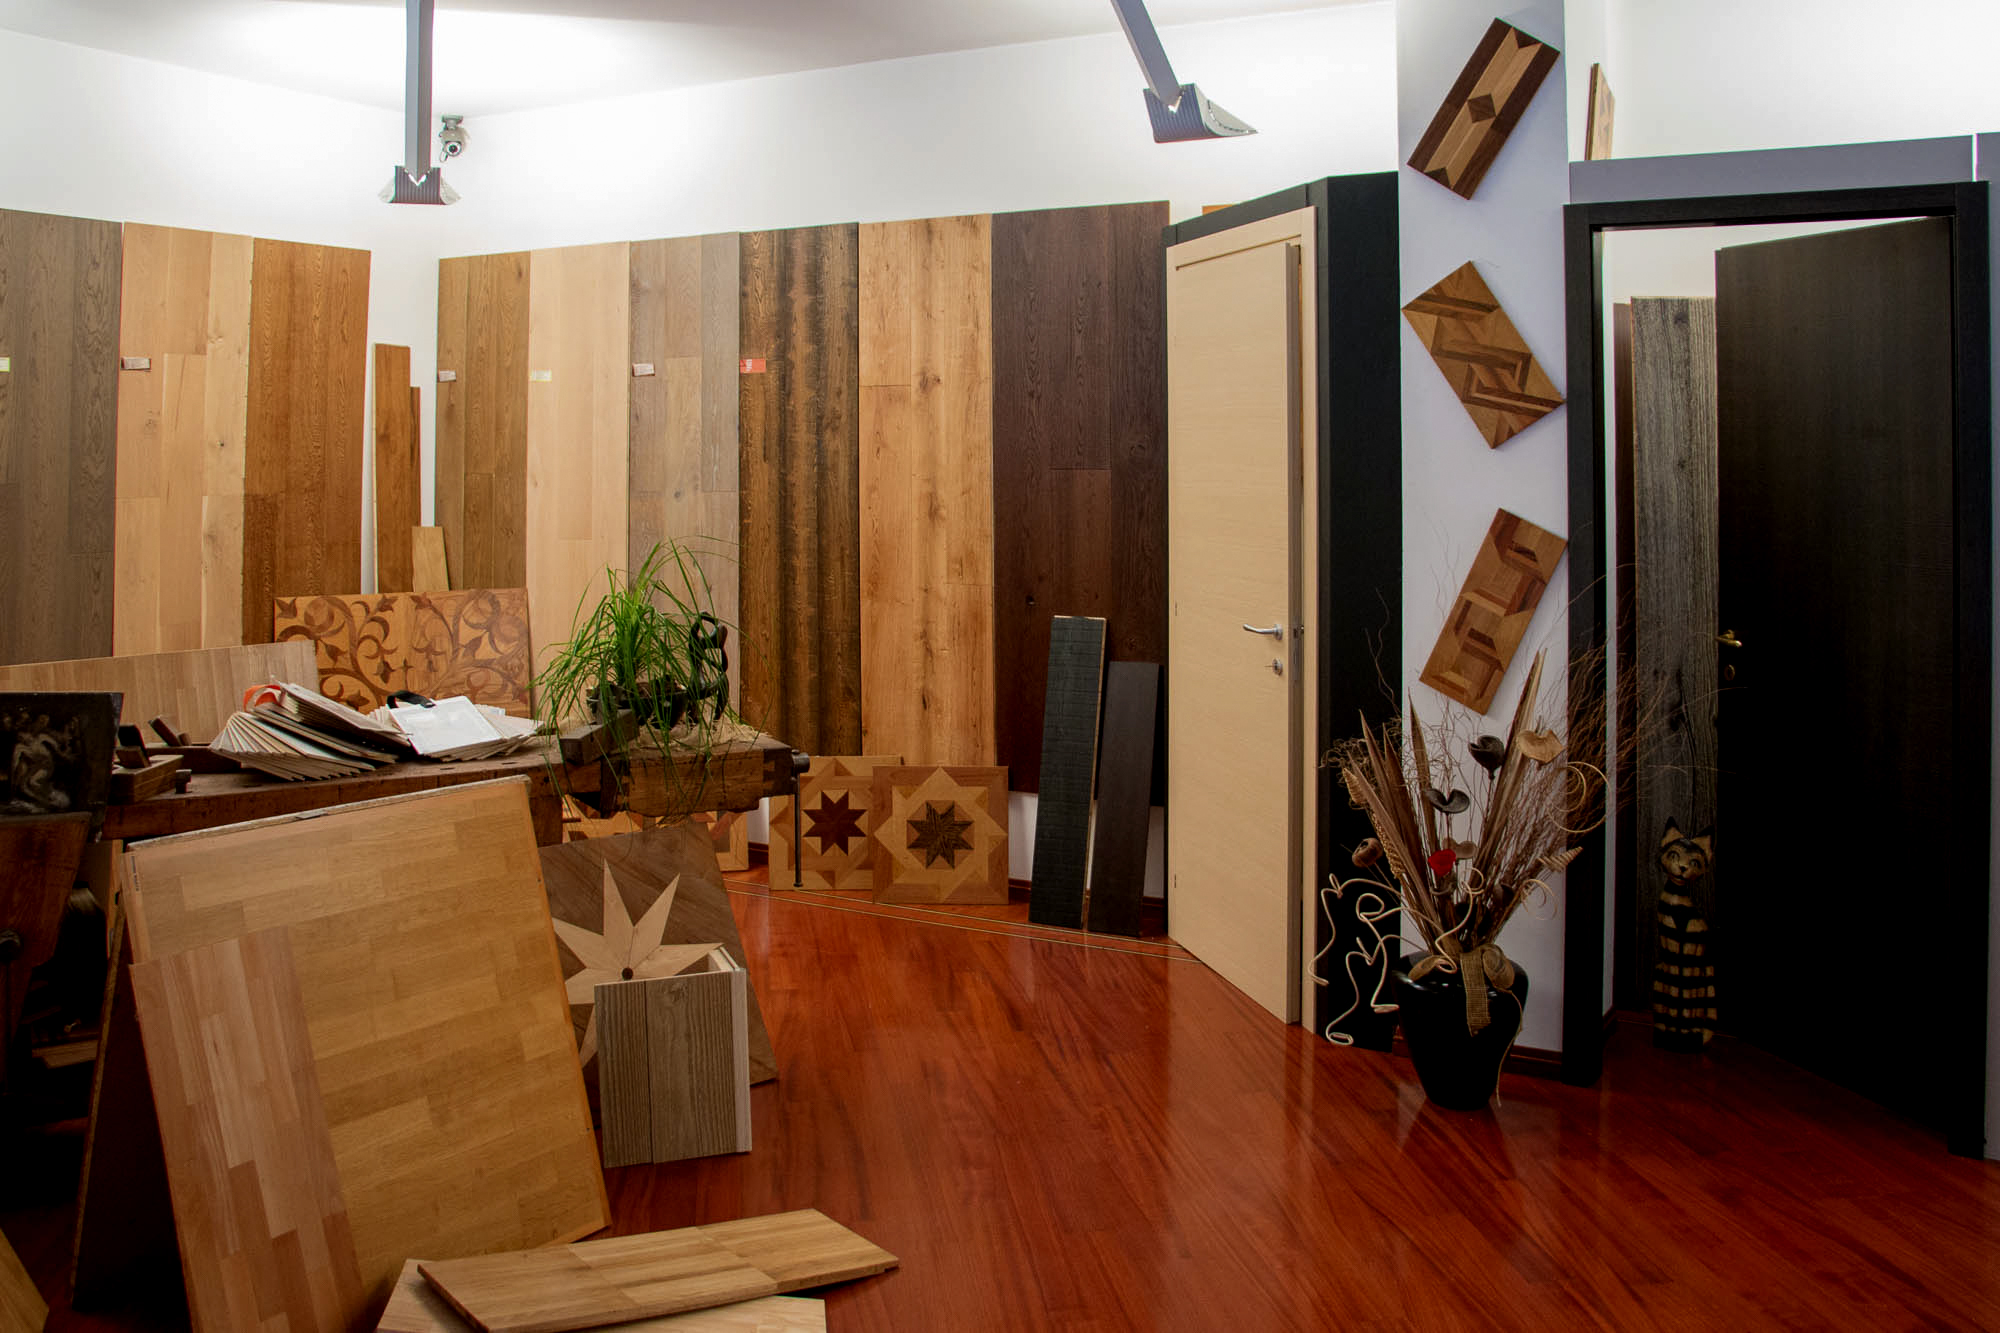 showroom ra legno pavimenti parquet borgosesia posa pavimenti porte legno